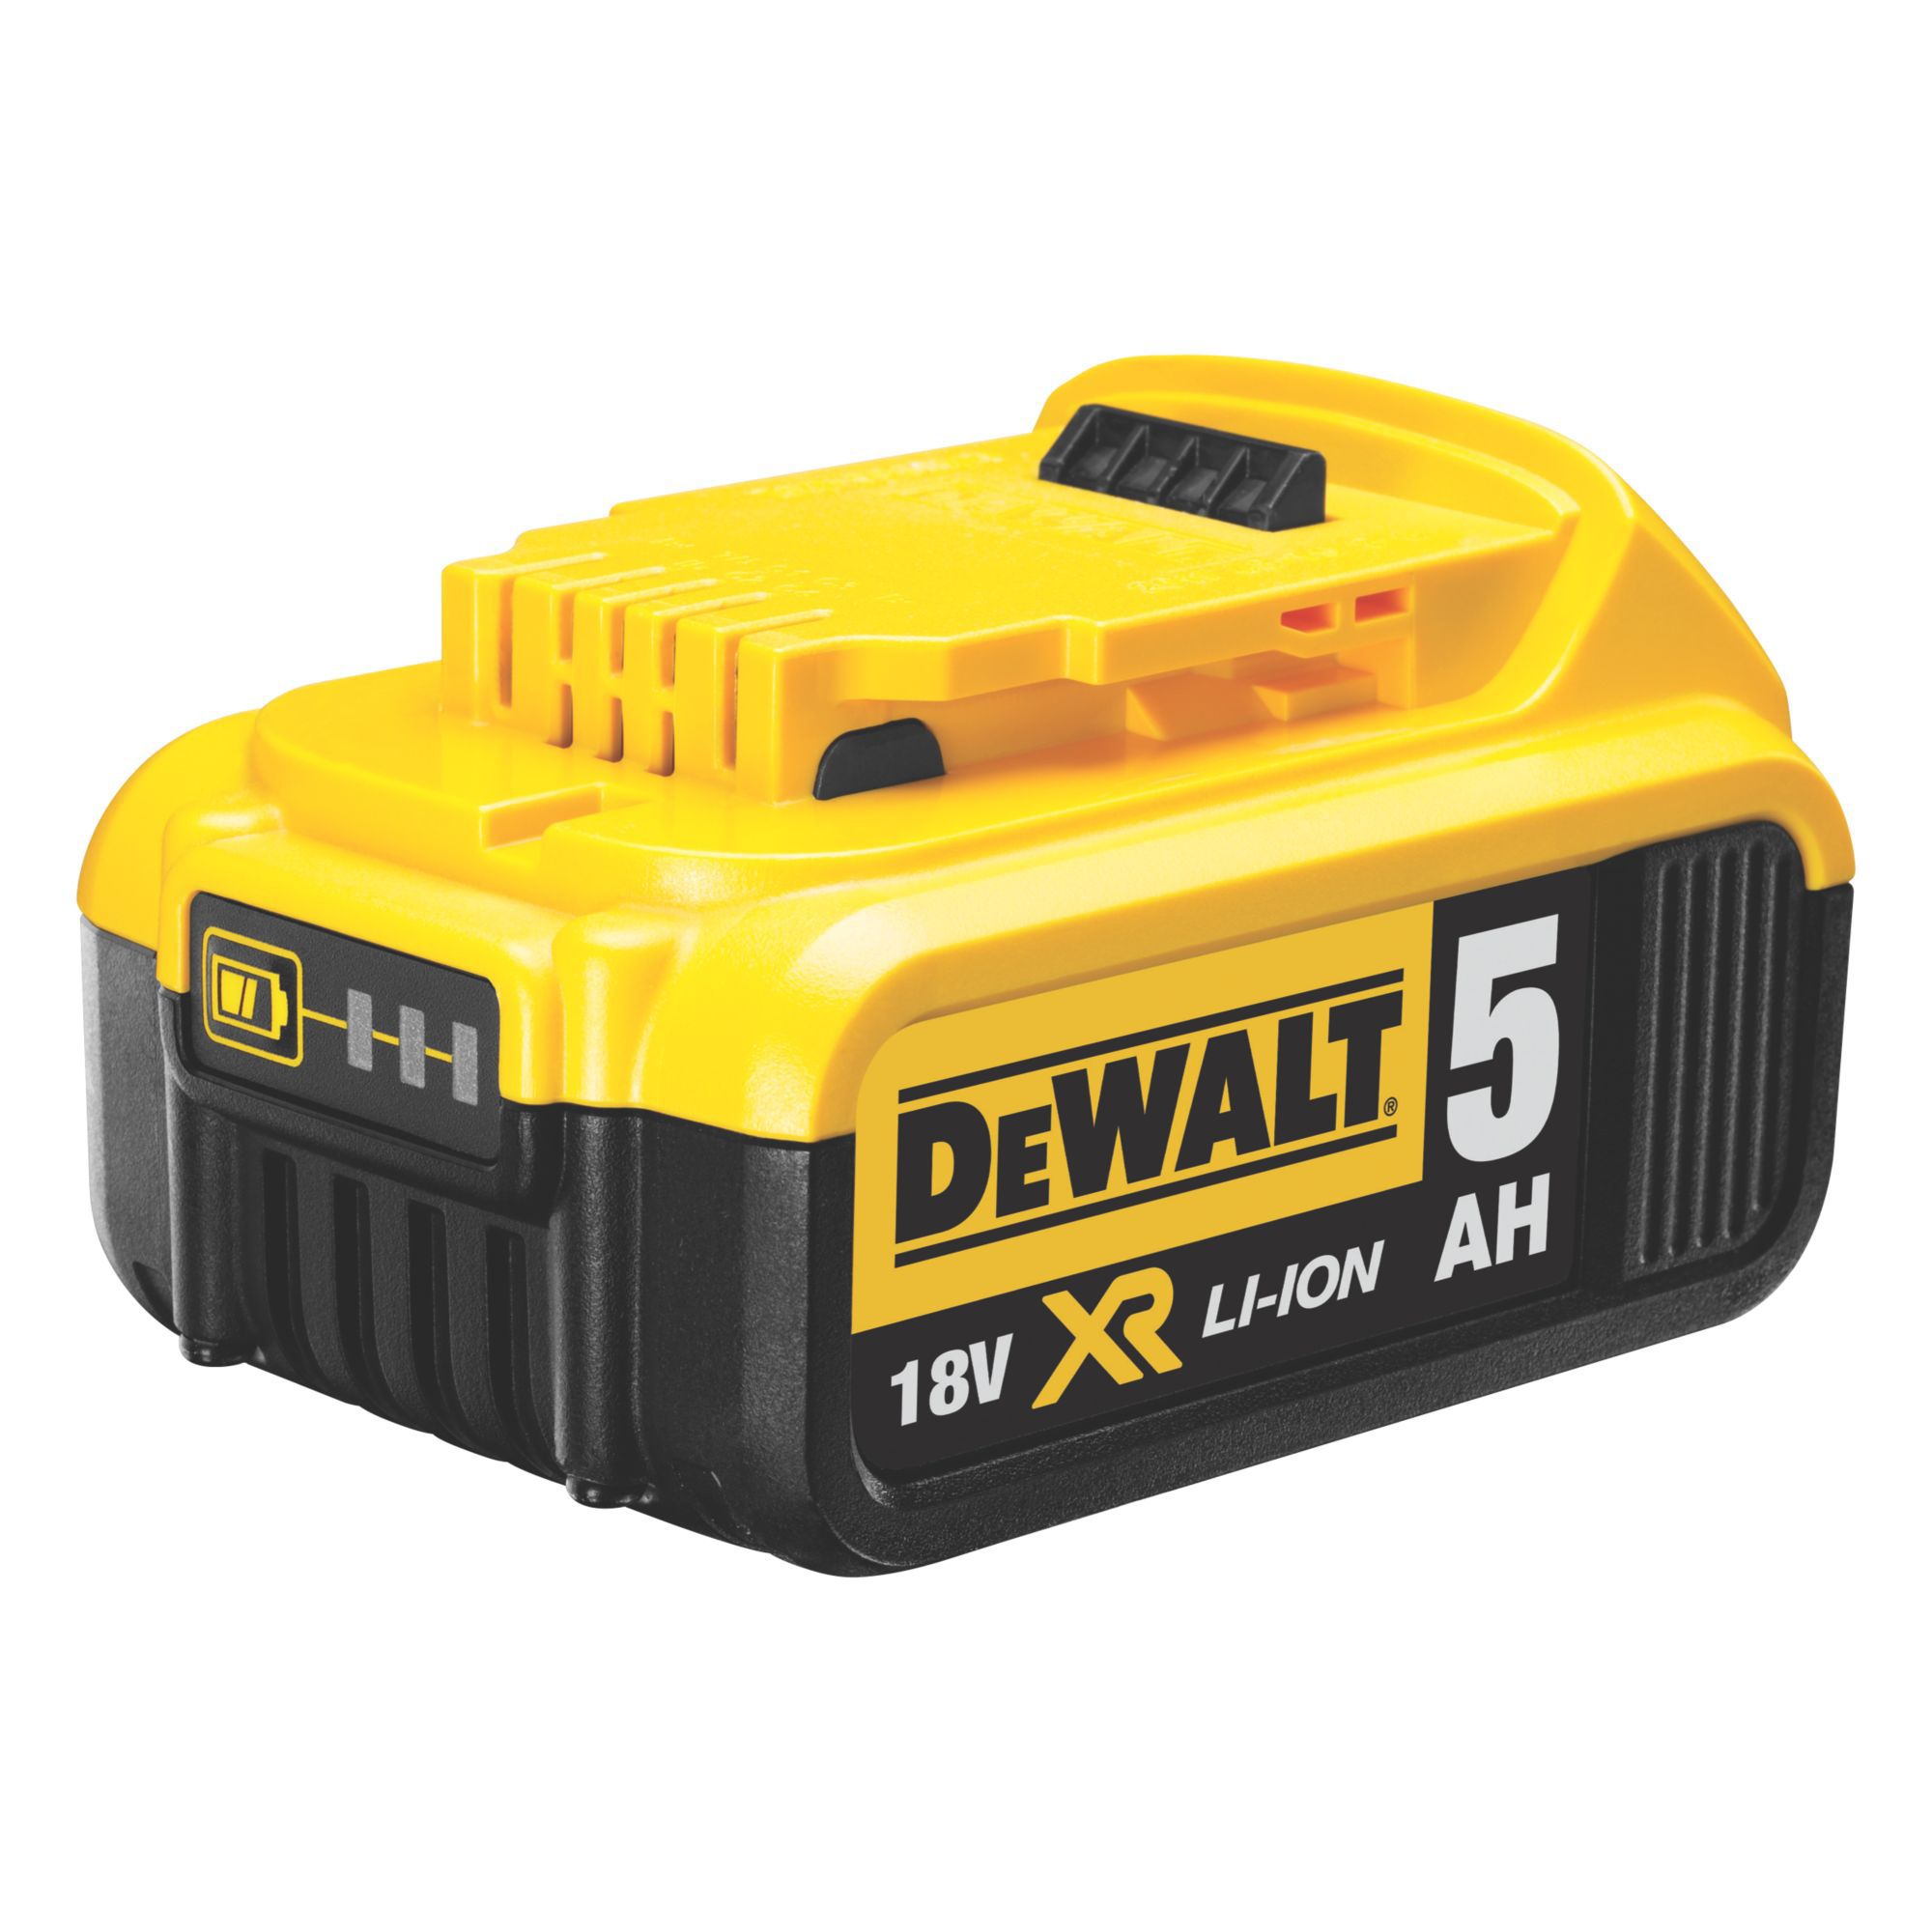 DeWalt 18V Li-ion Brushless Cordless Combi drill (2 x 5Ah) - DCD796P2-GB